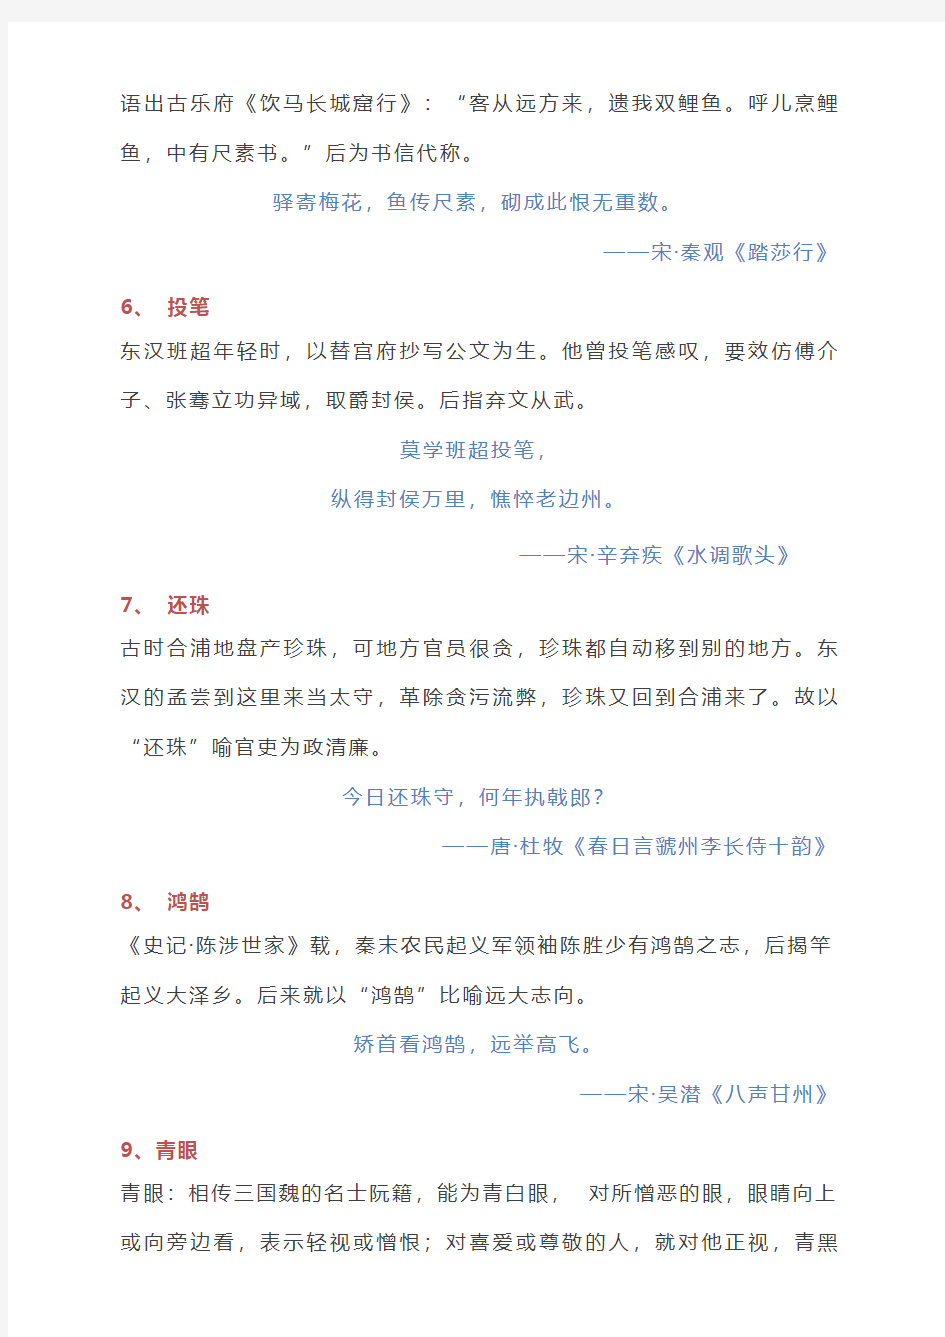 古诗词中常见的27个文化典故,帮你读懂诗意中华